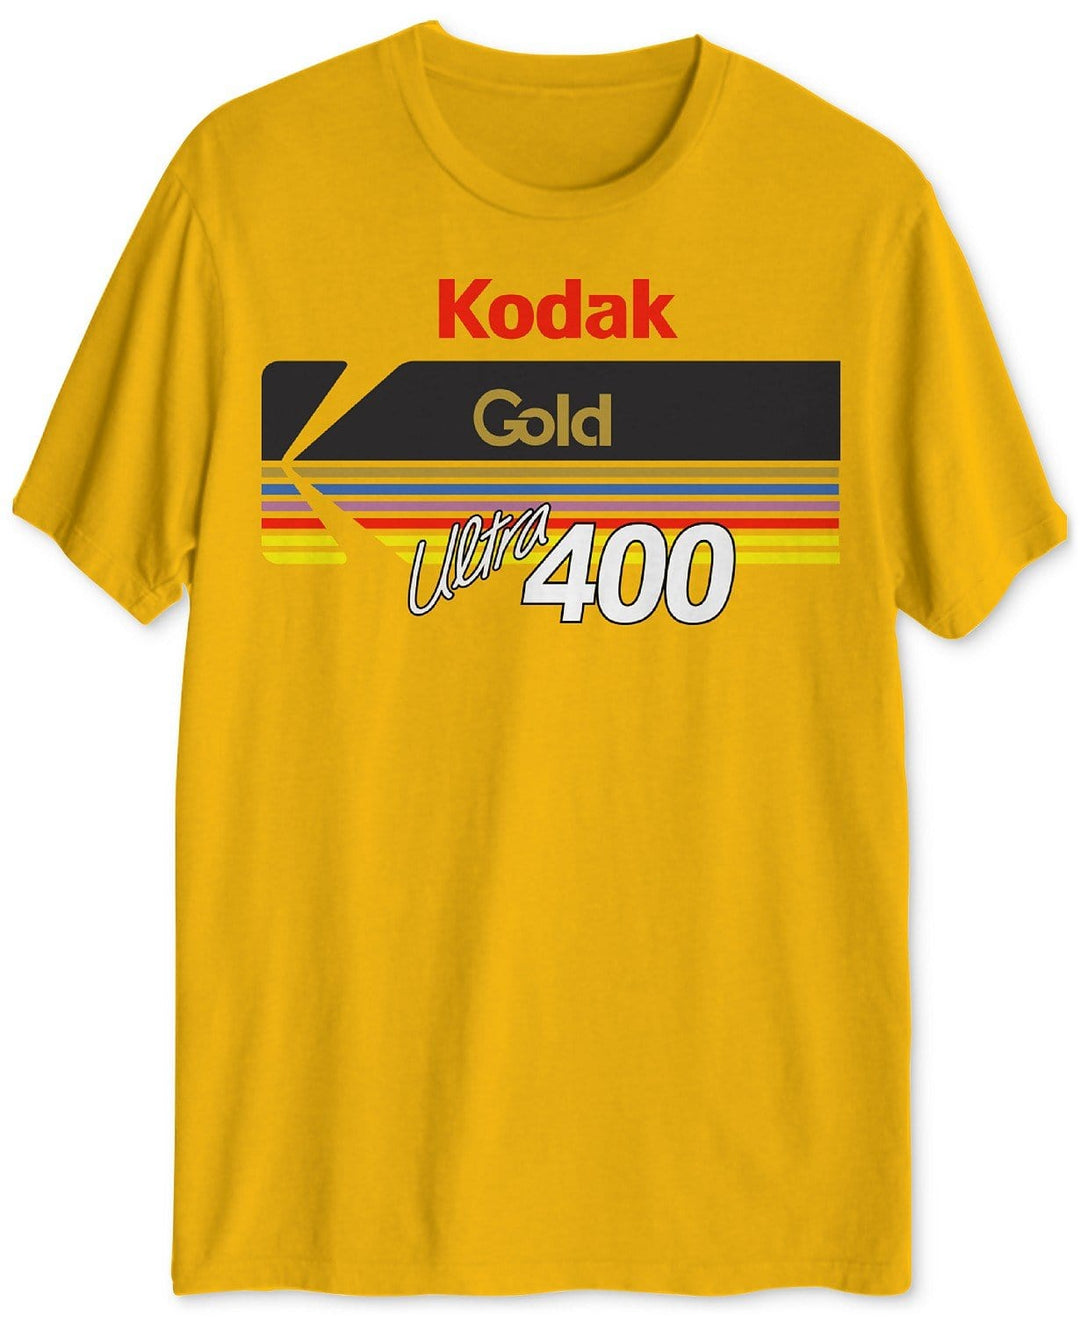 Kodak Gold Ultra 400 T-Shirt